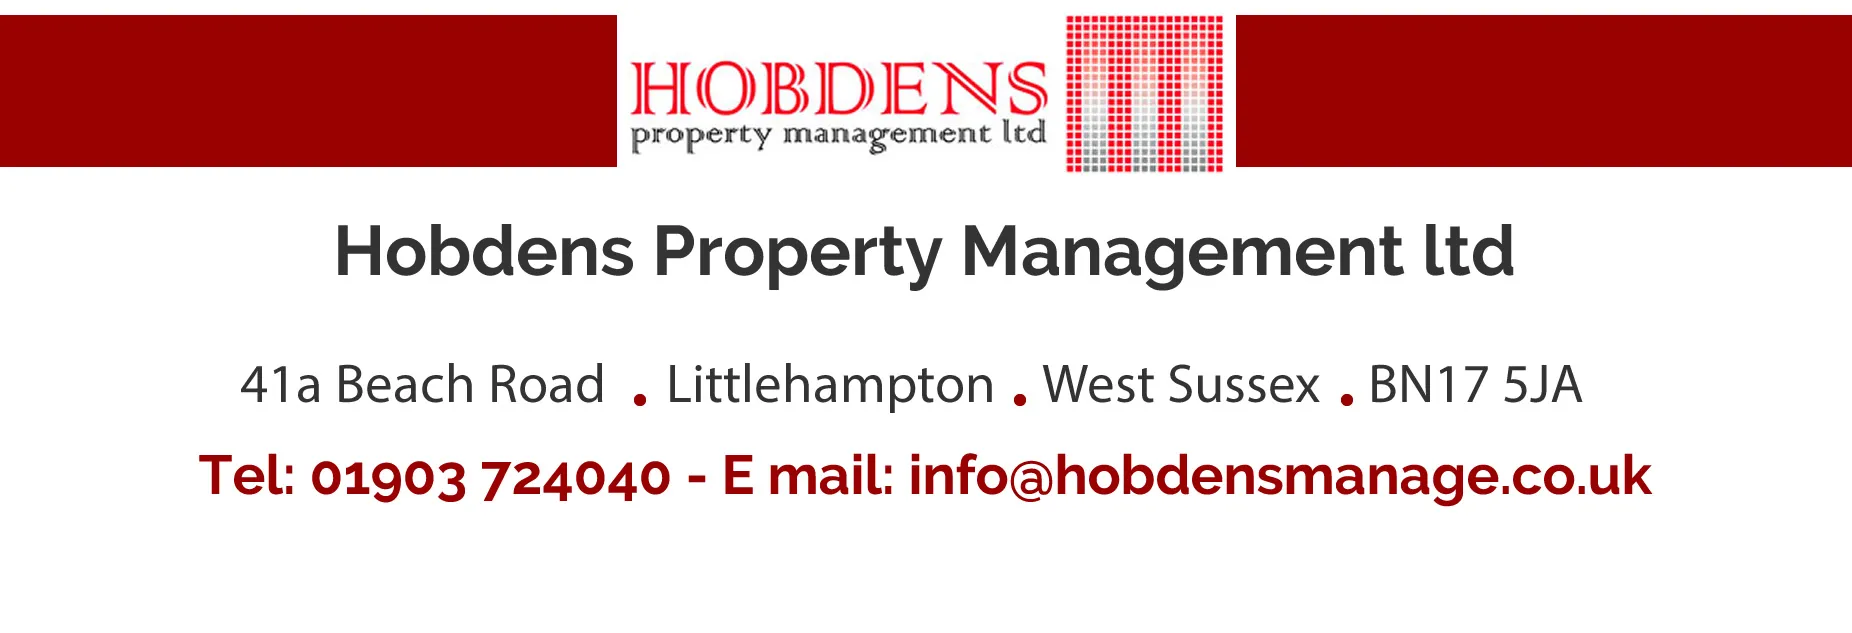 Hobdens Property Management Ltd